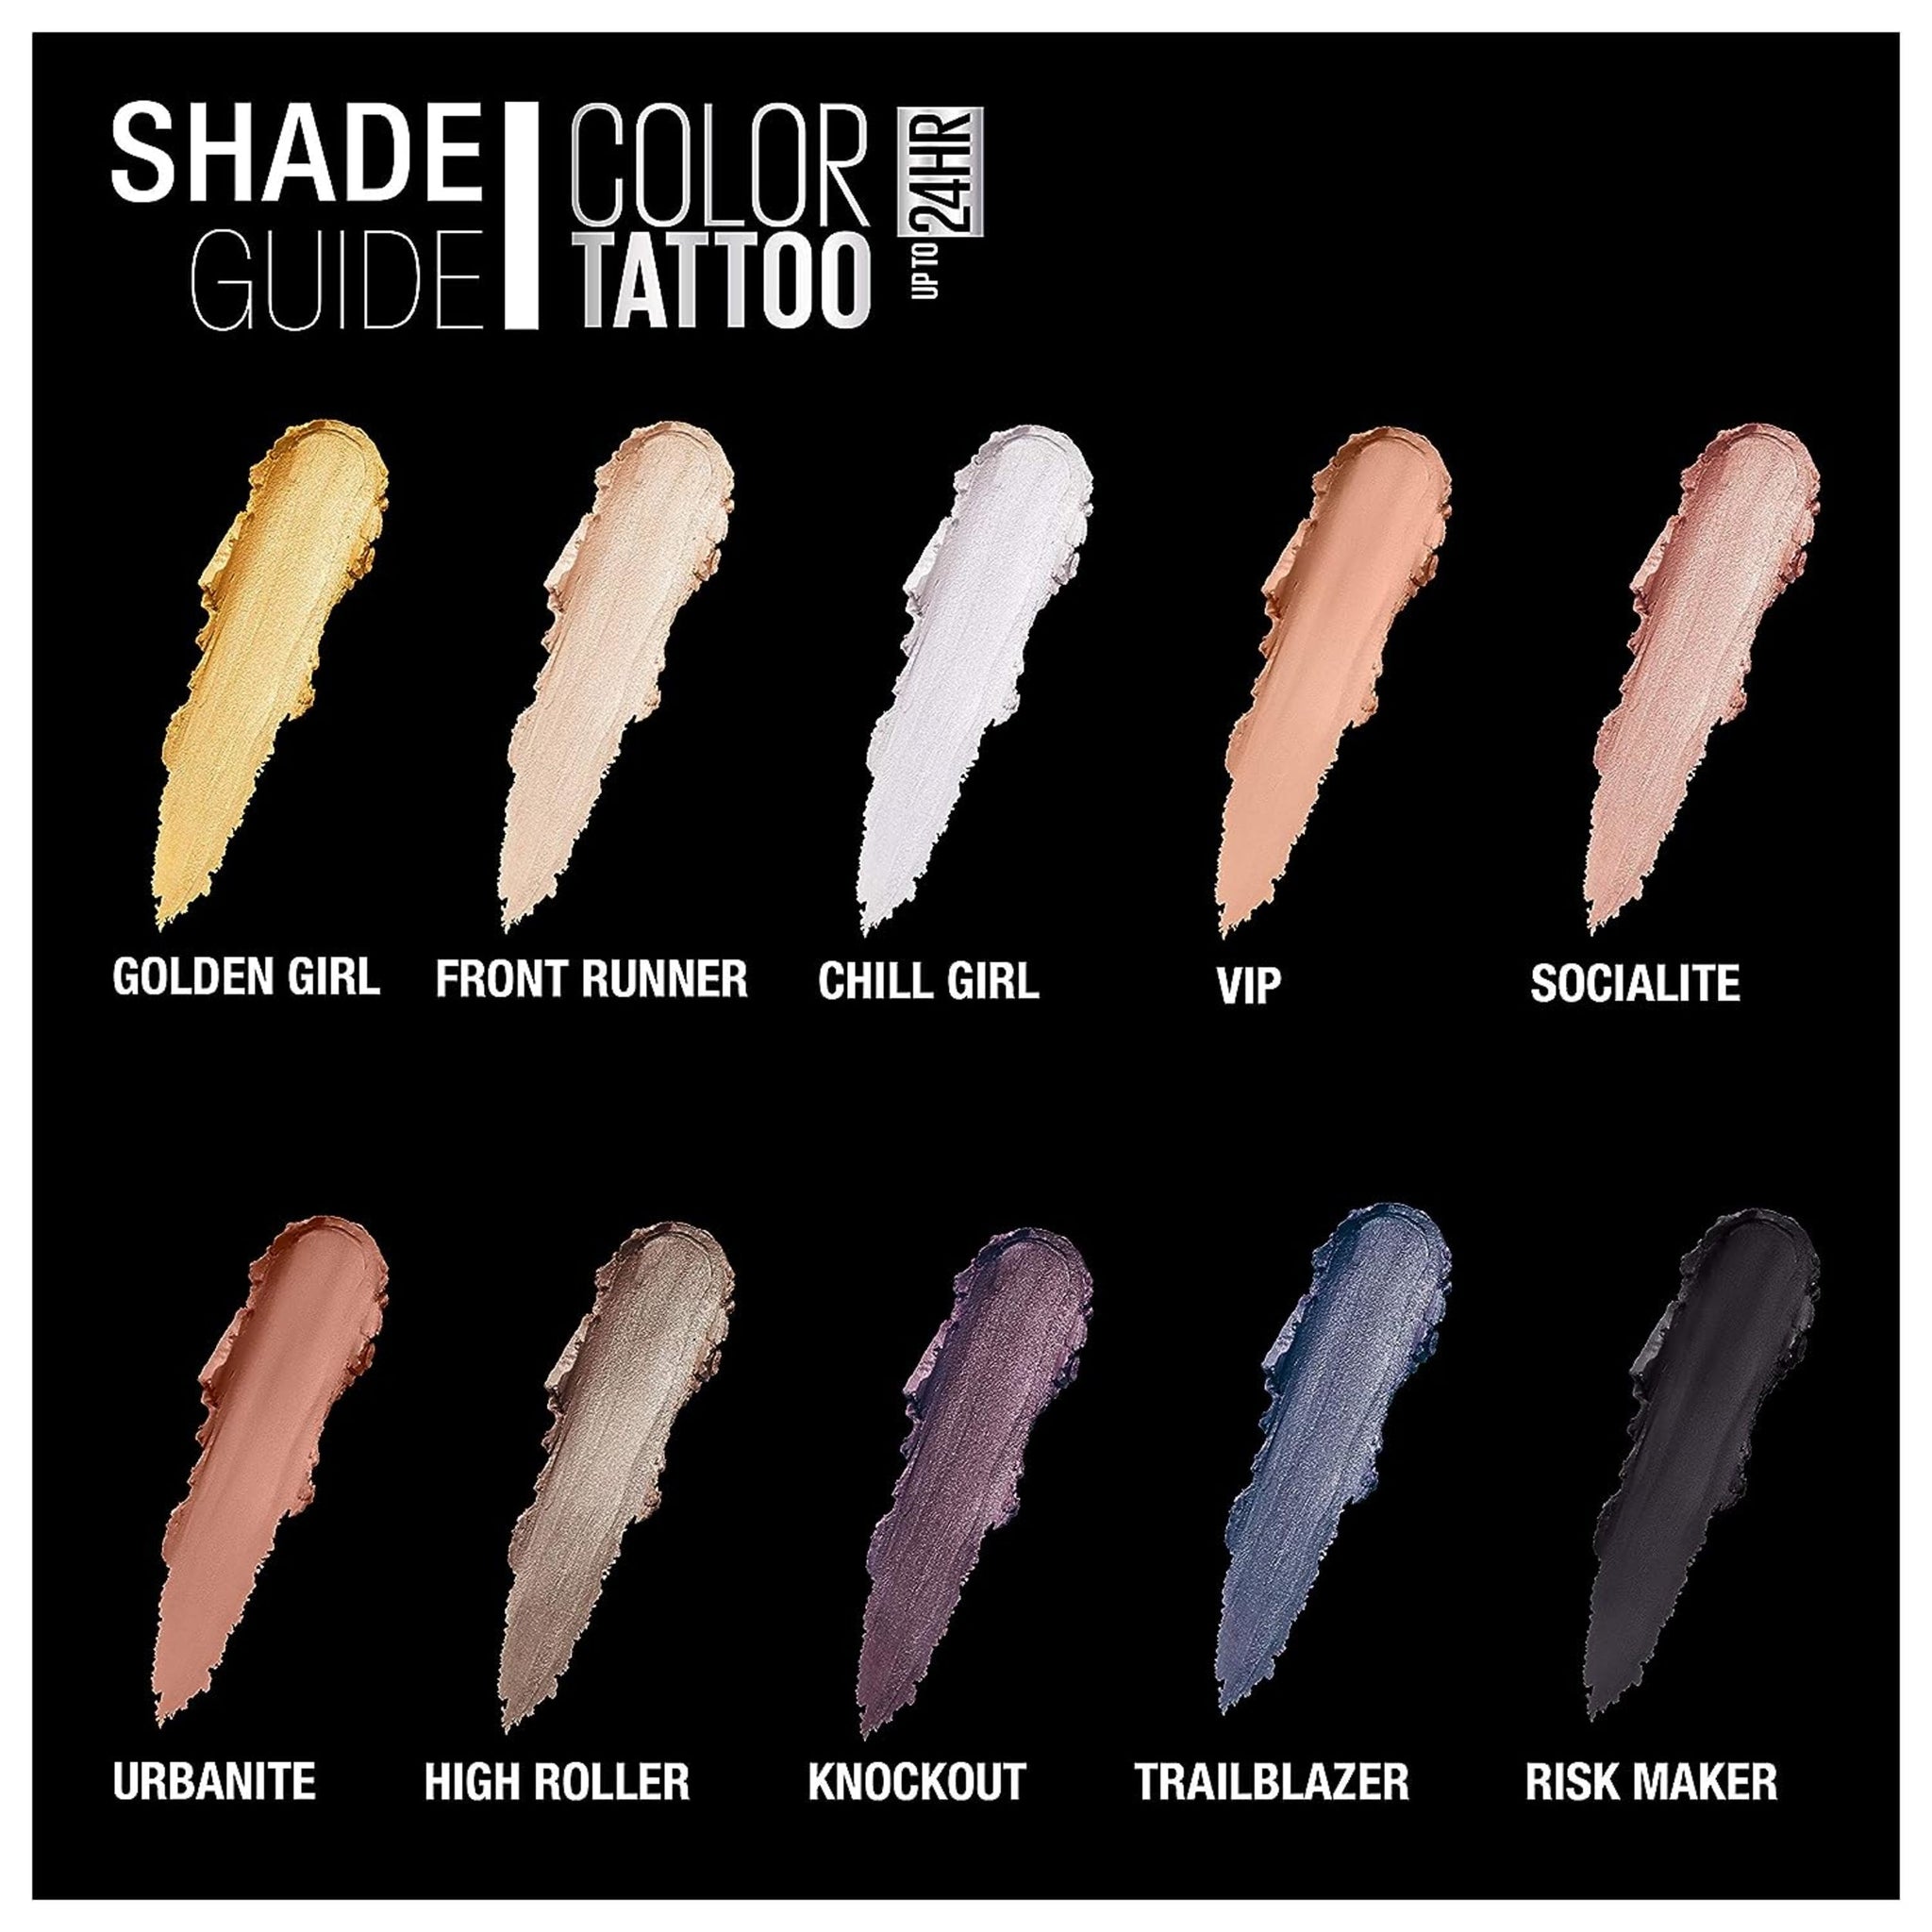 Color Tattoo Up To 24HR Longwear Cream Eyeshadow